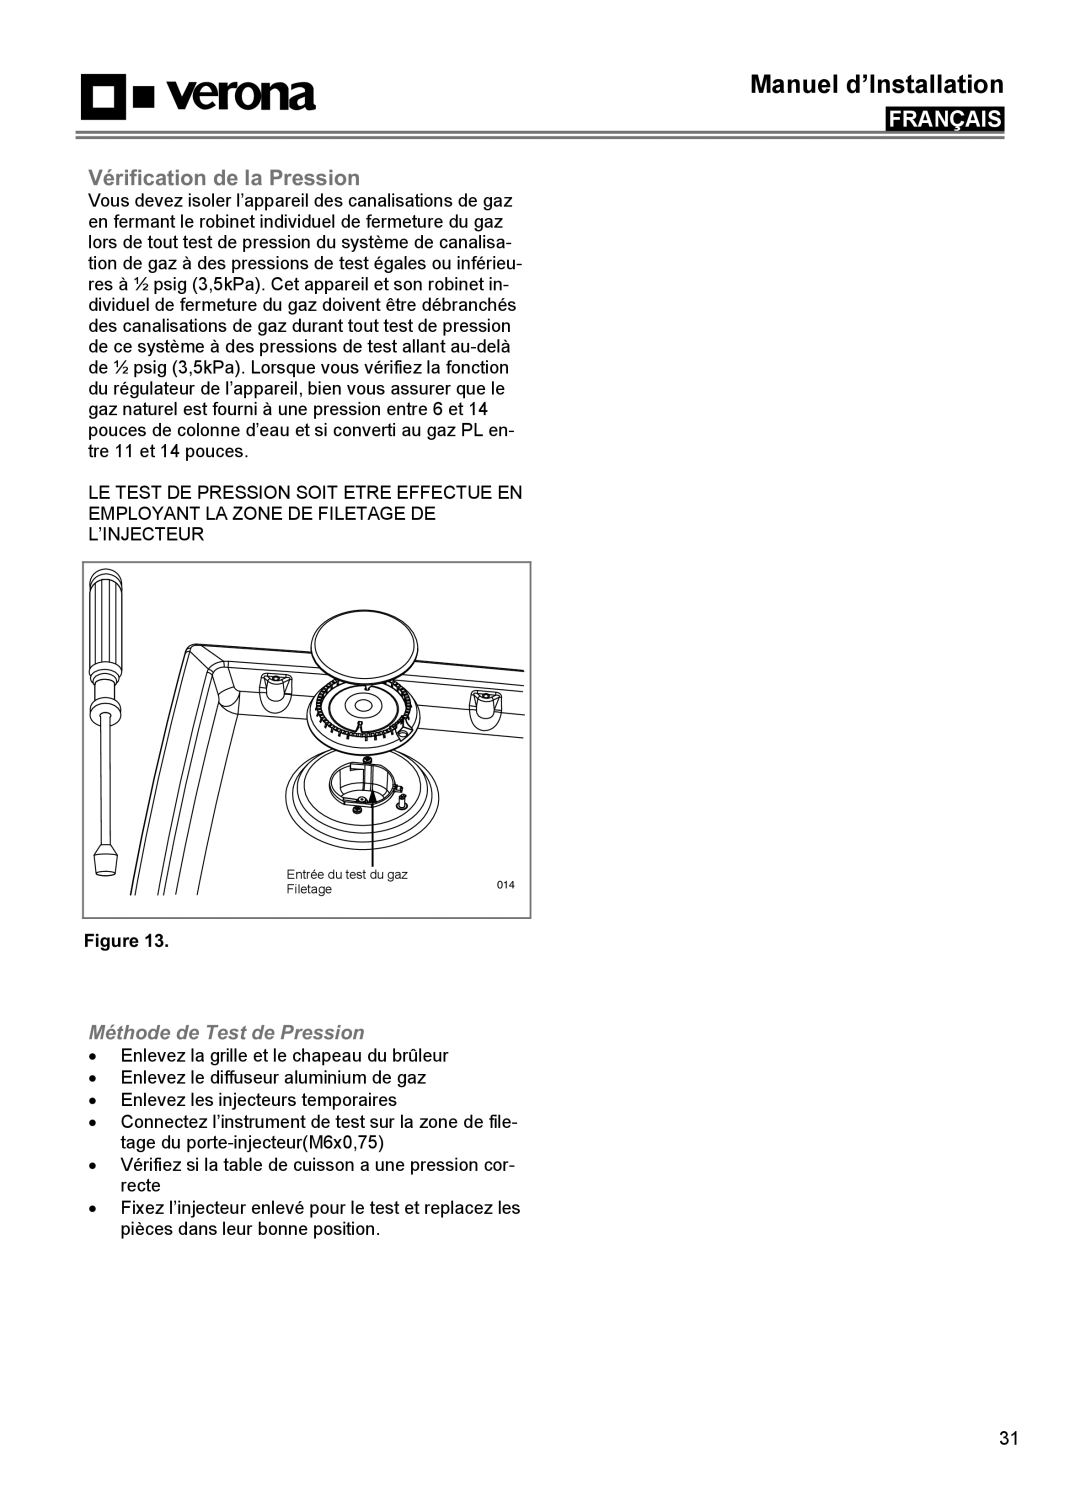 Verona VECTGMS304SS manual Vérification de la Pression, Méthode de Test de Pression, Manuel d’Installation, Français 